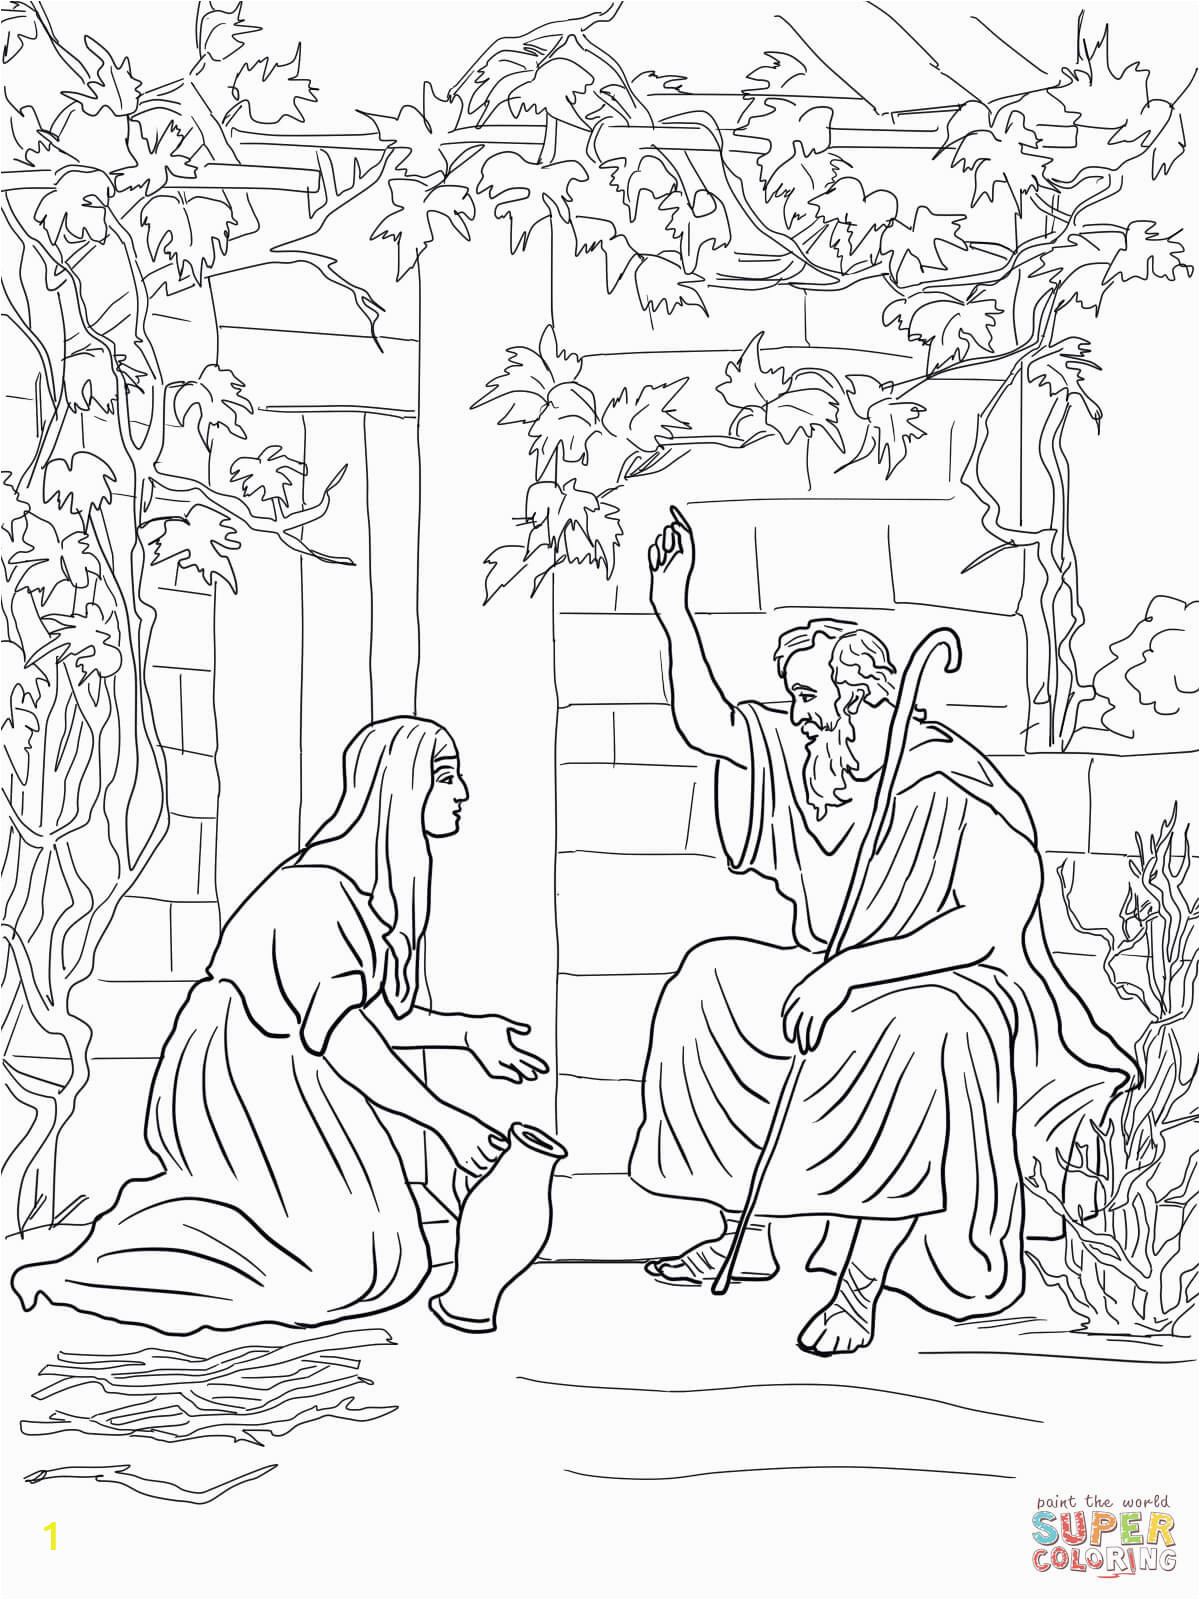 elijah and the widow of zarephath